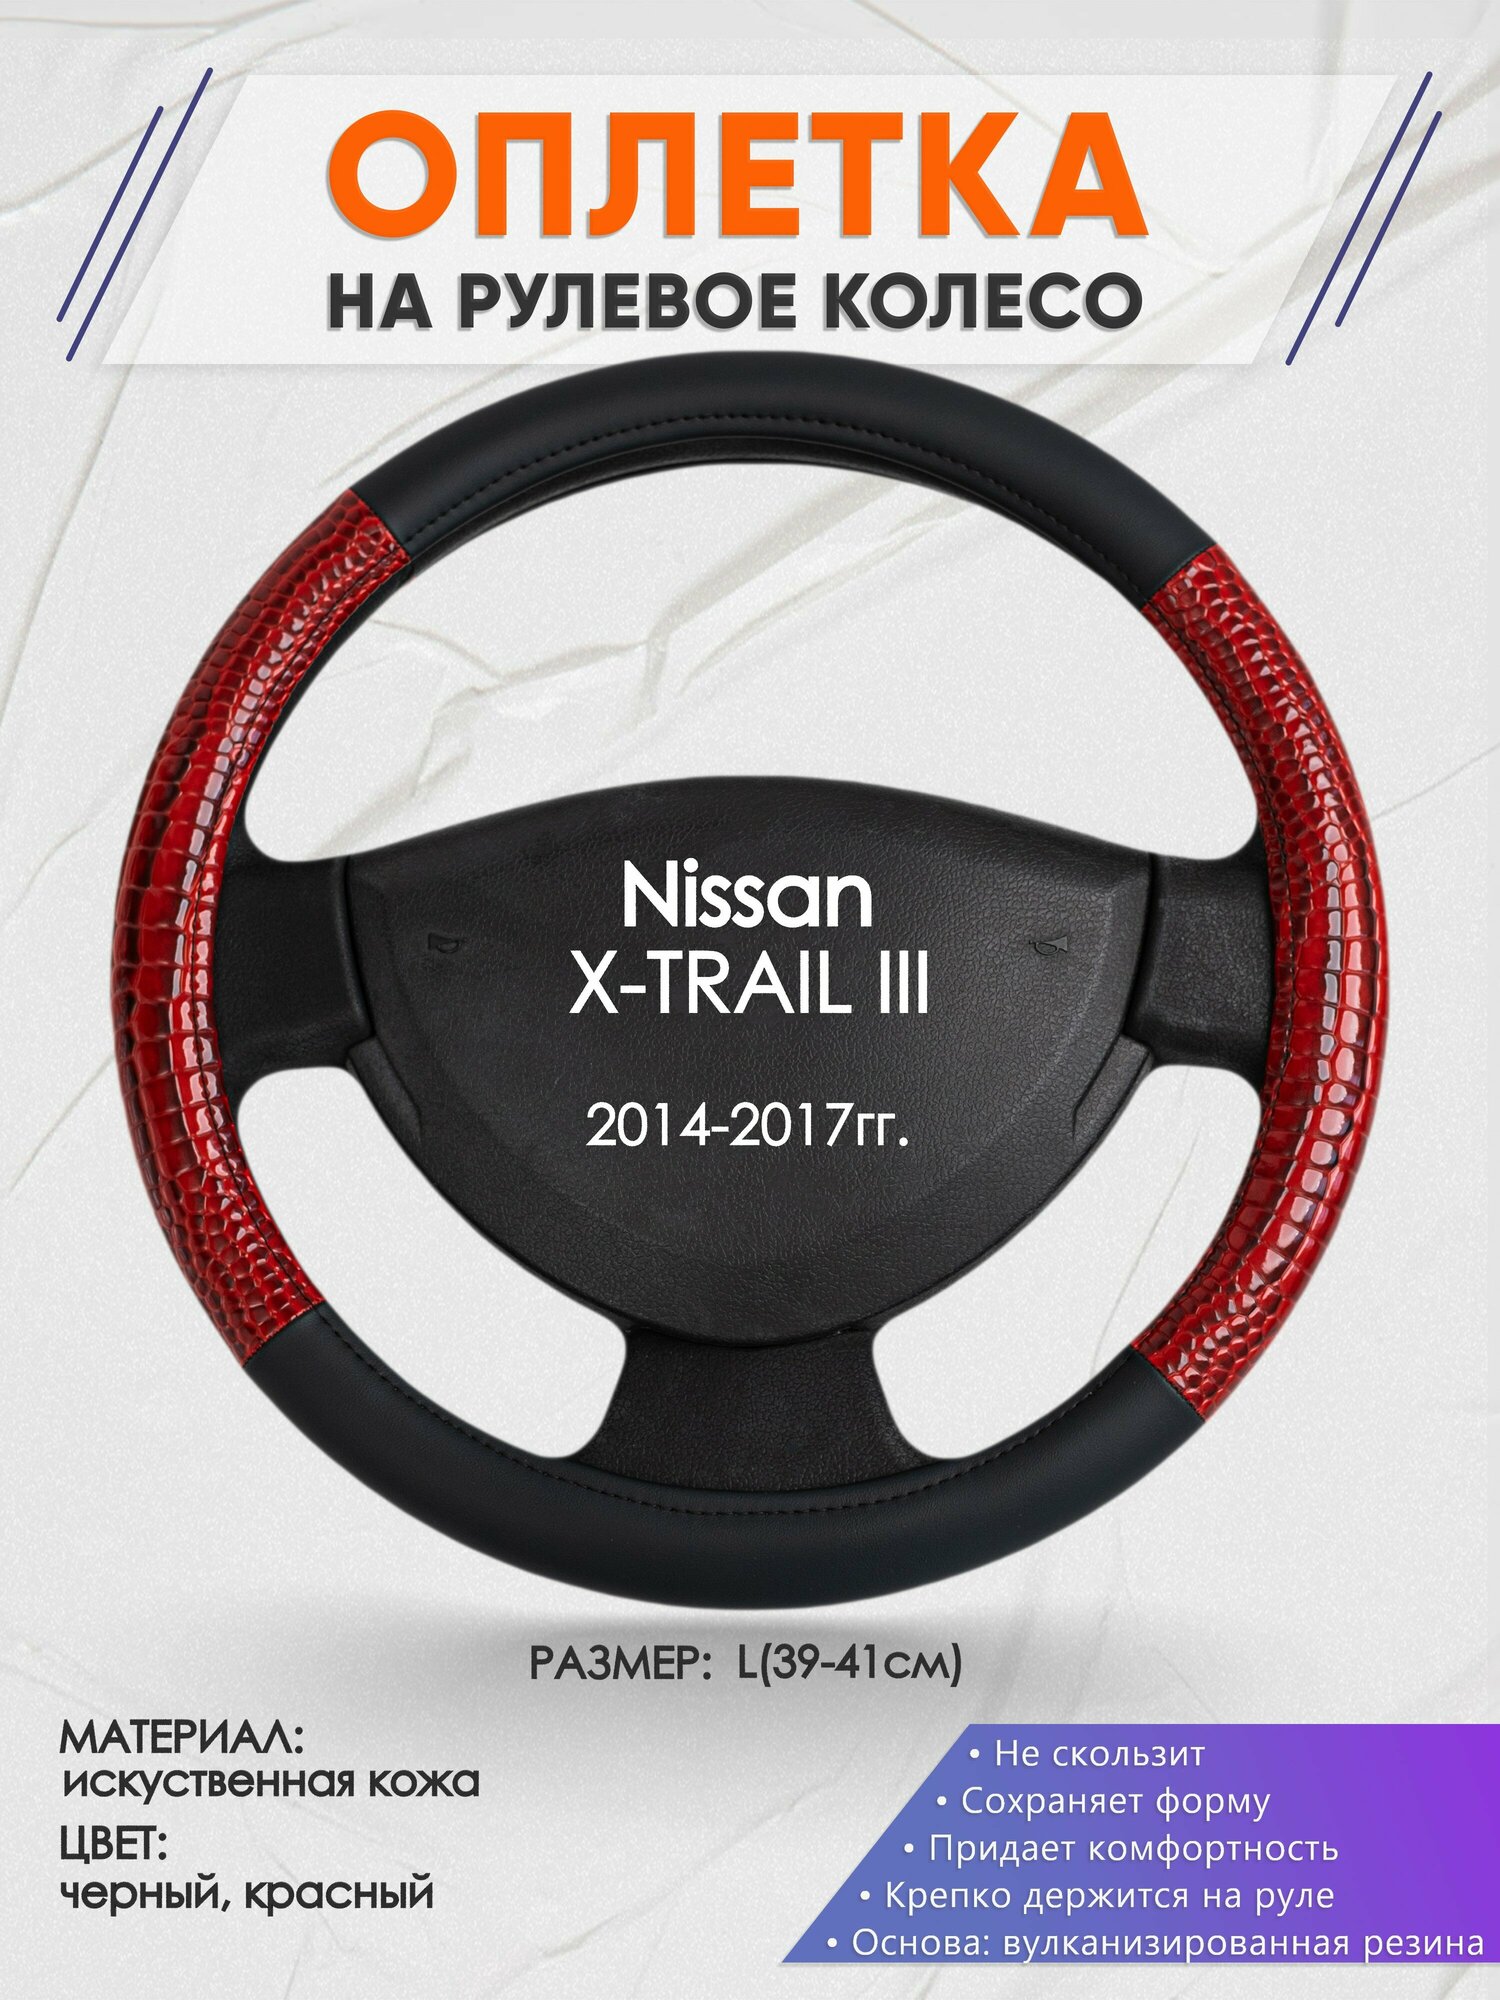 Оплетка на руль для Nissan X-TRAIL 3(Ниссан Икс Трейл) 2014-2017, L(39-41см), Искусственная кожа 16